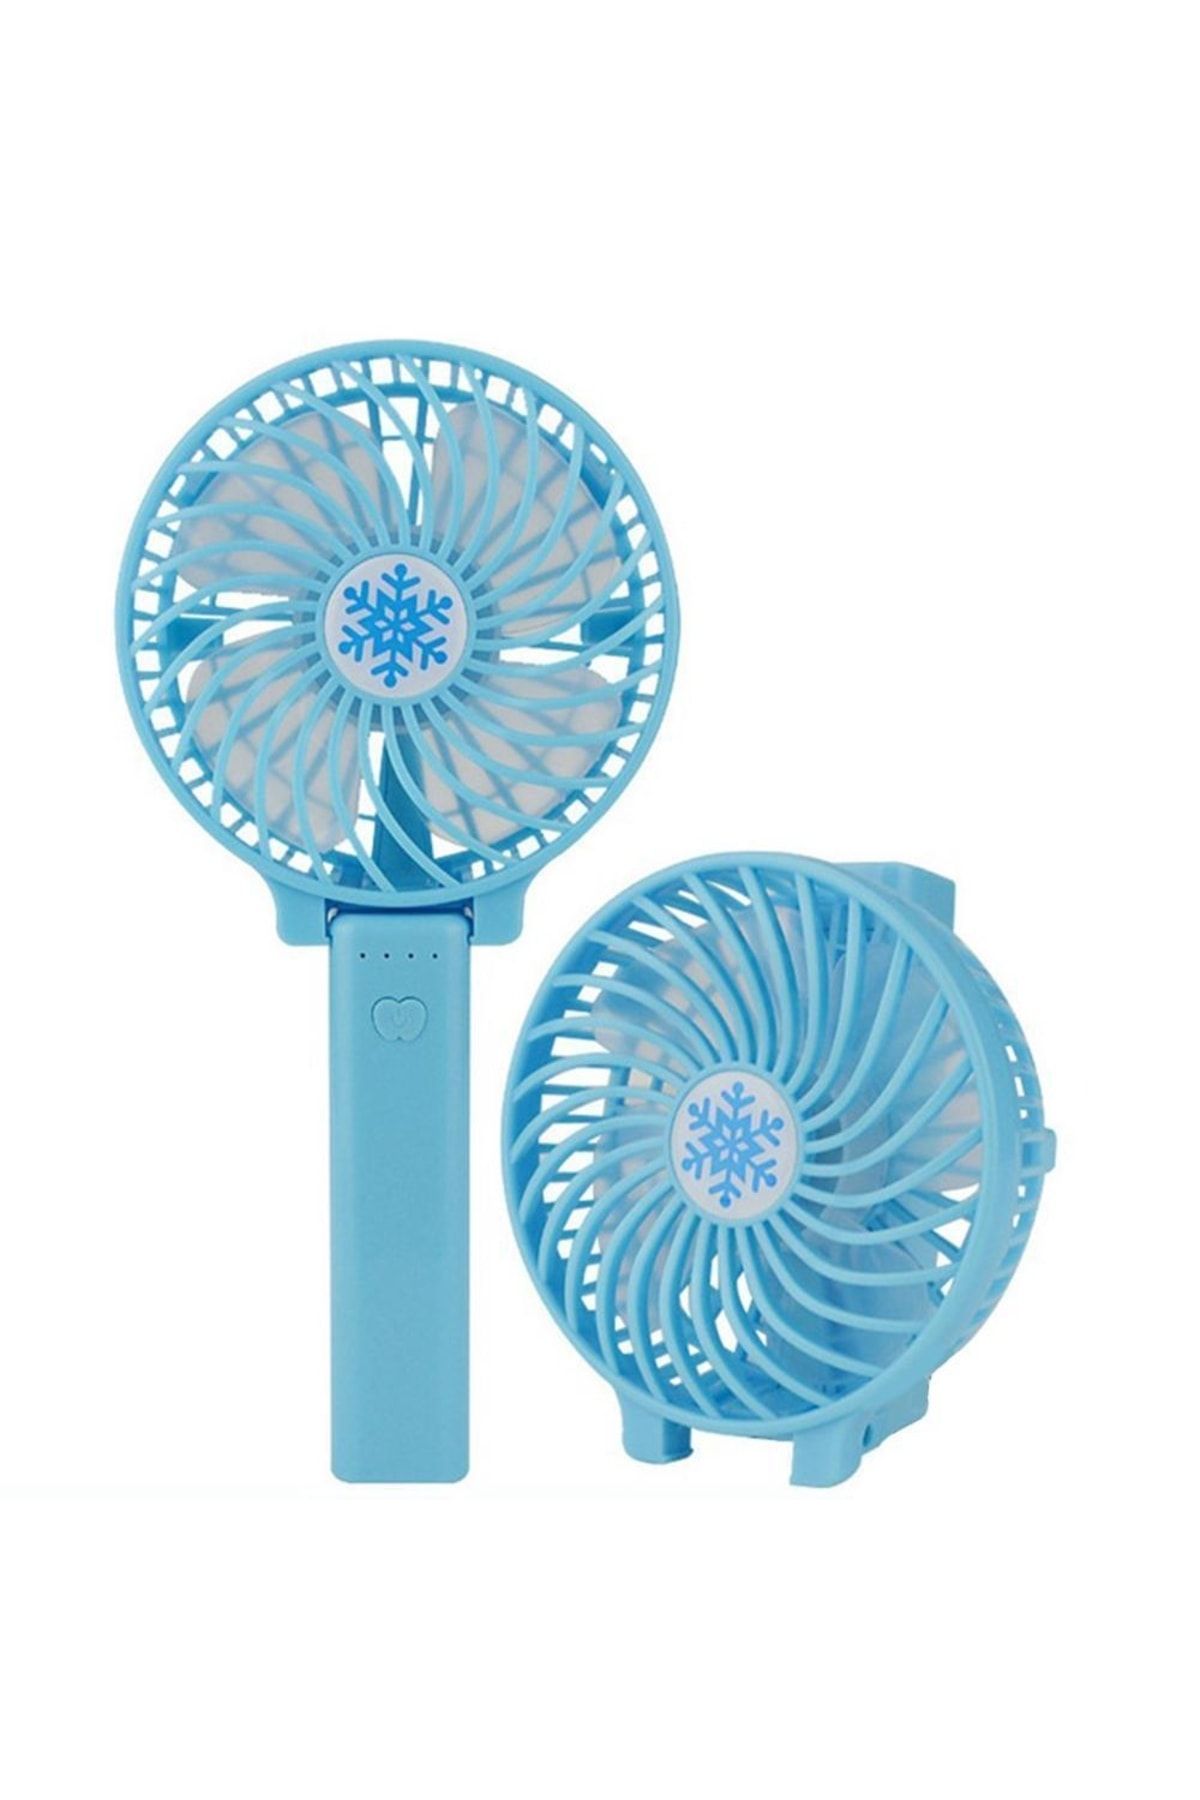 uygunabuldum Şarjlı Mini Fan - Sessiz Soğutucu - El Fanı Vantilatör - Ayarlanabilir Masaüstü